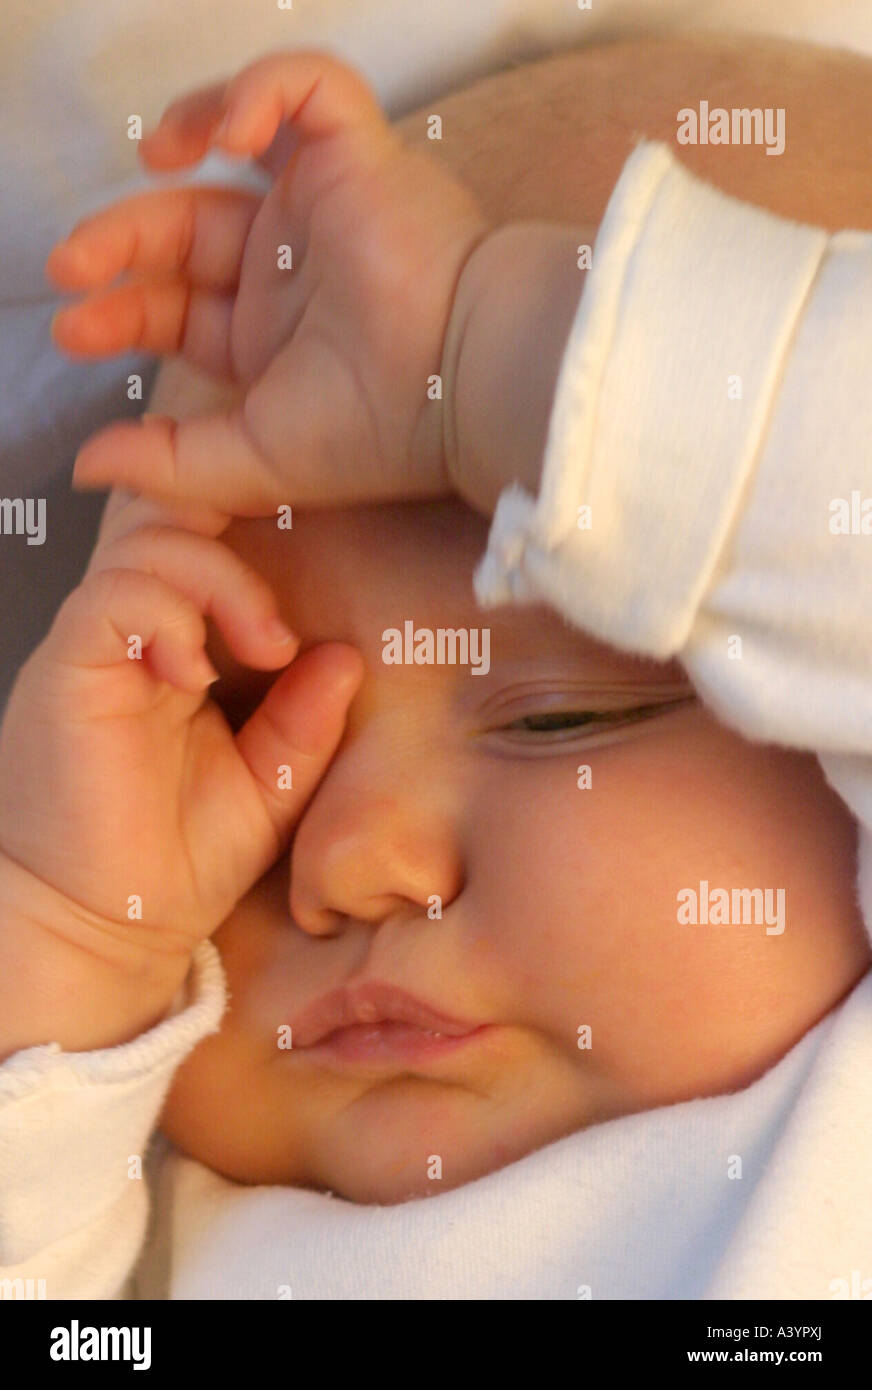 Menschen, Menschen, Menschen (Homo Sapiens Sapiens), Baby, seine Augen reiben sprach- Stockfoto